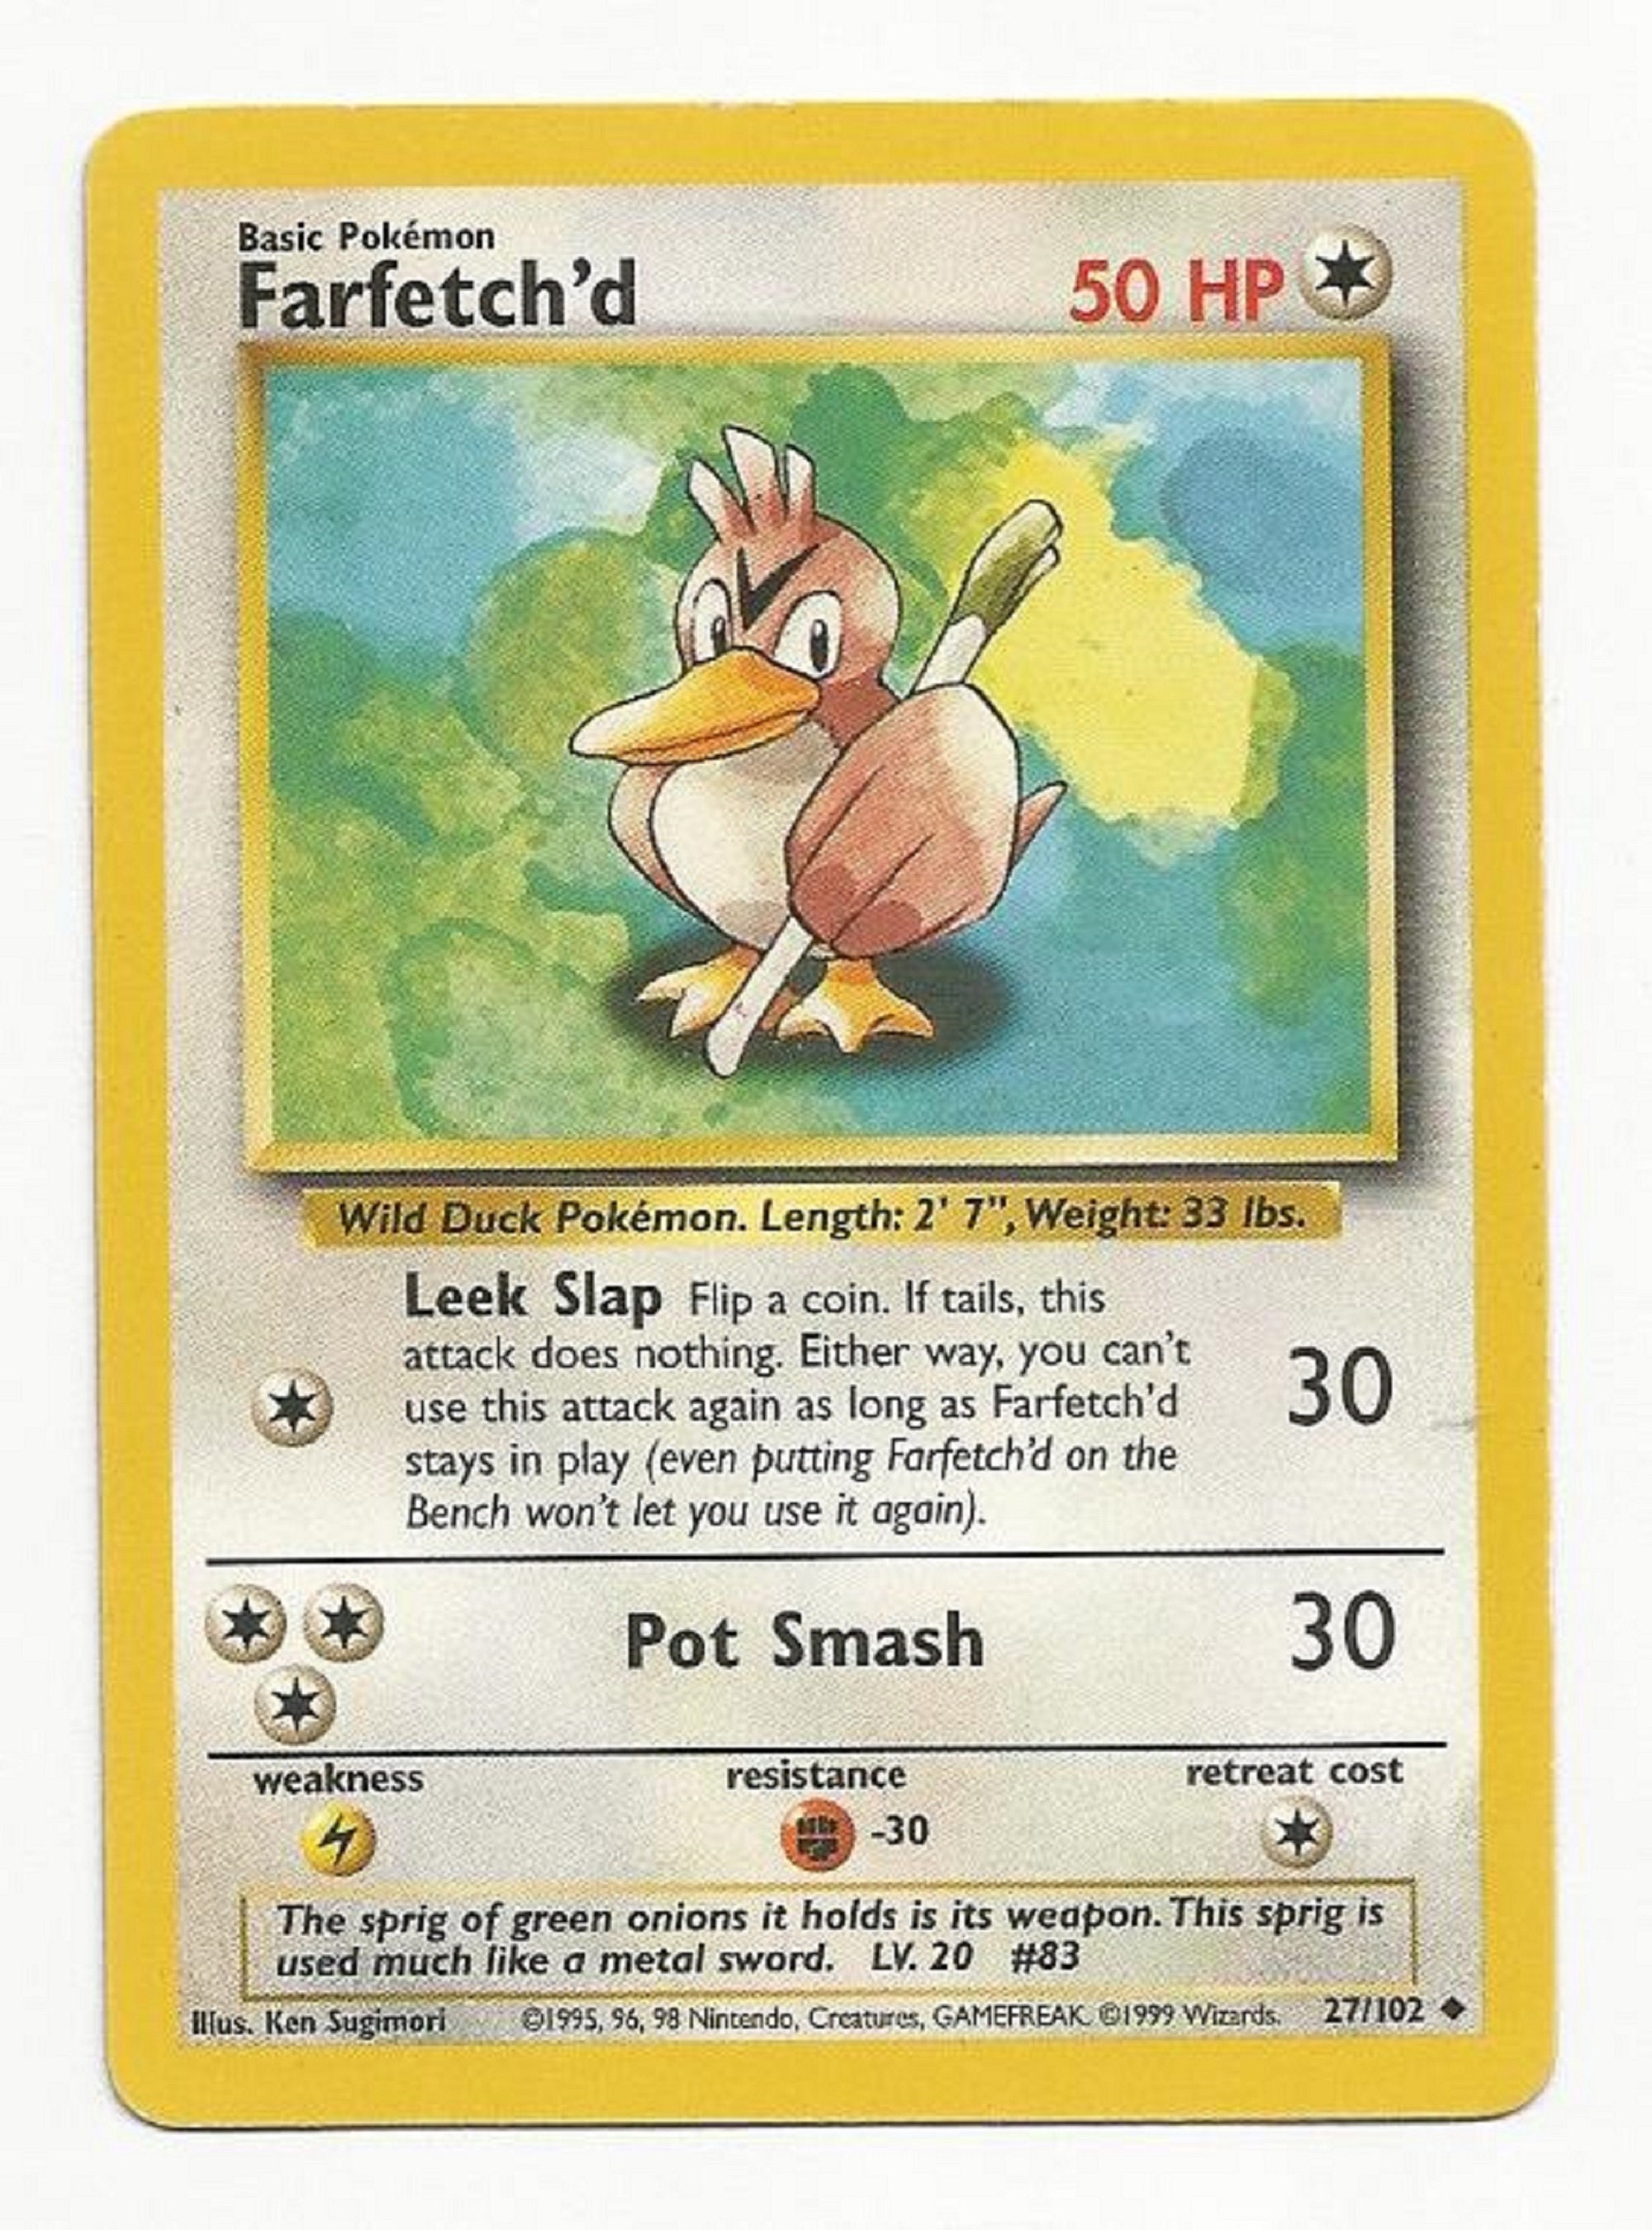 1995, 96, 98 Pokemon Card ** Farfetch'd ** - Base Set 27/102 - Uncommon